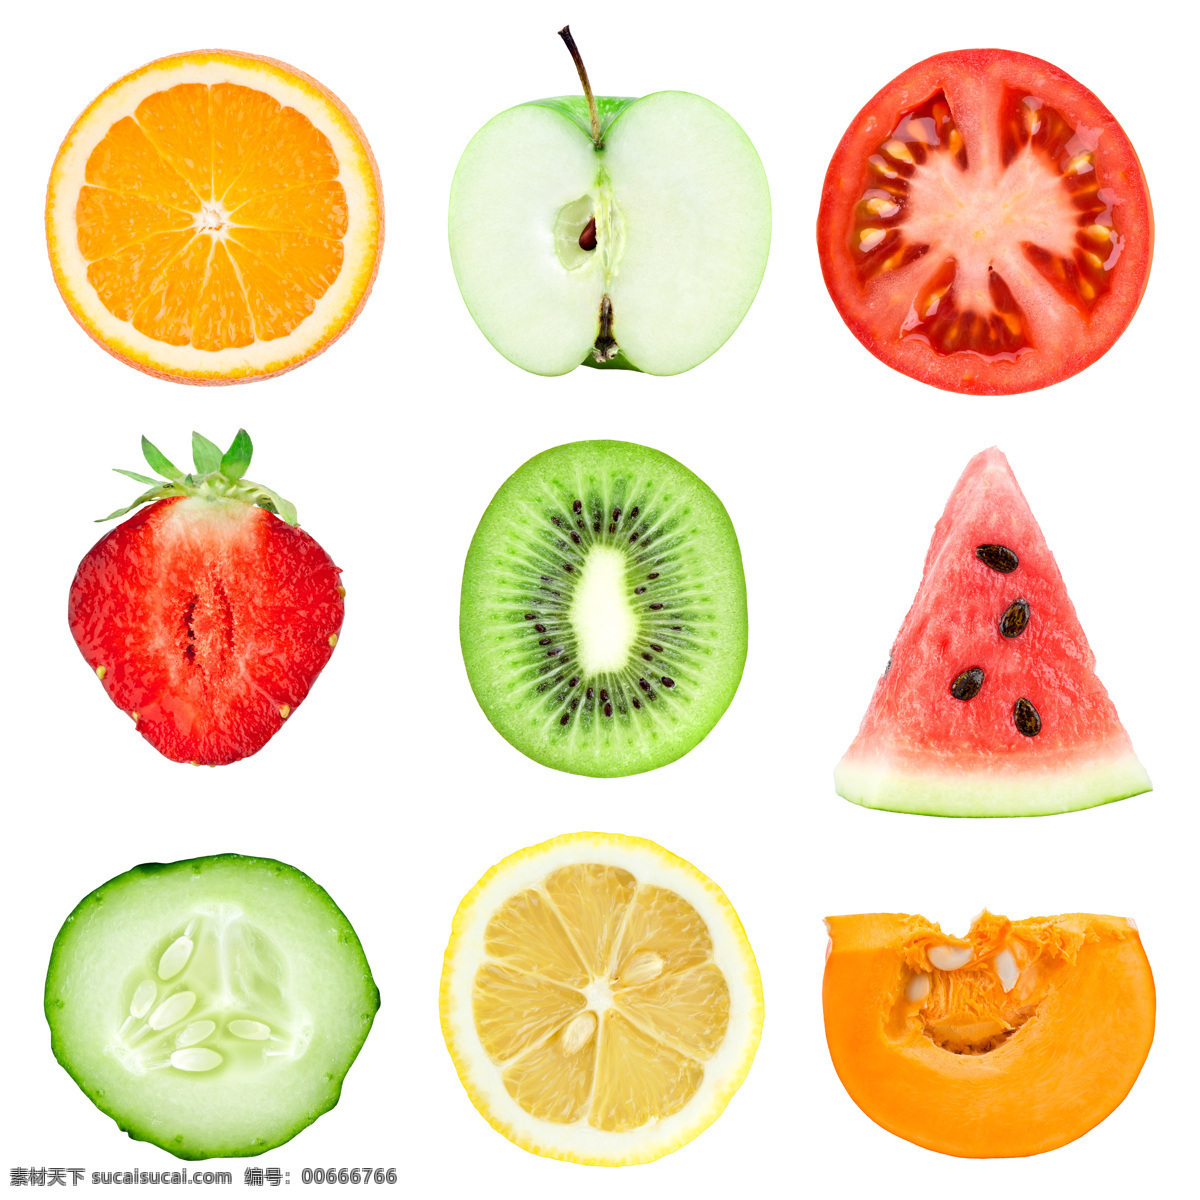 切开 水果 柠檬 苹果 西红柿 草莓 猕猴桃 西瓜 水果摄影 水果素材 水果图片 餐饮美食